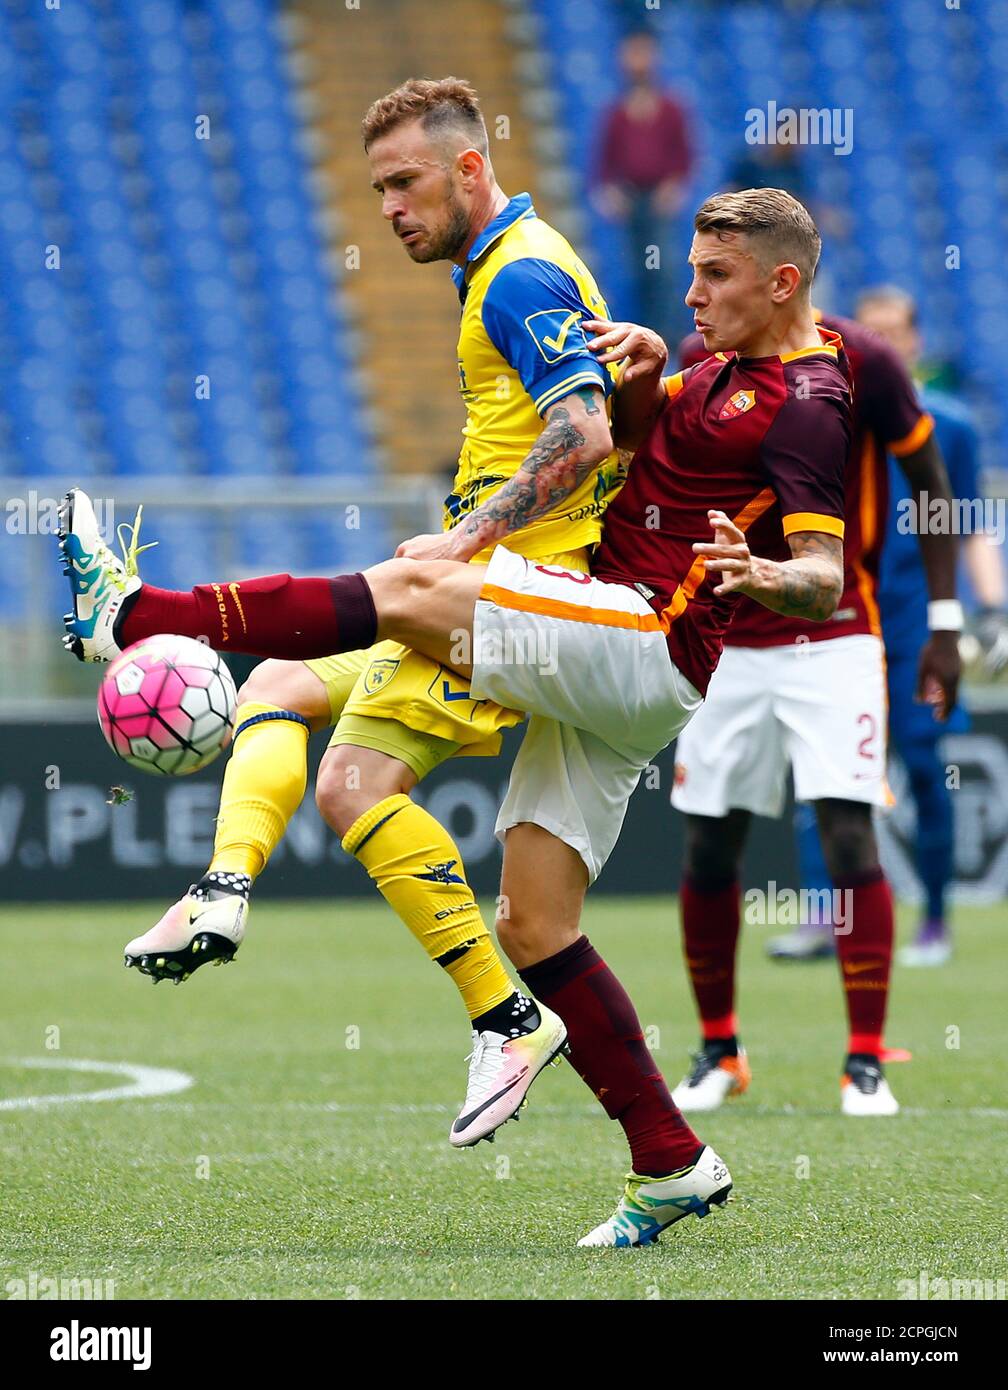 Football Soccer - AS Roma v Chievo Verona - Italian Serie A - Olympic  Stadium, Rome, Italy - 08/05/